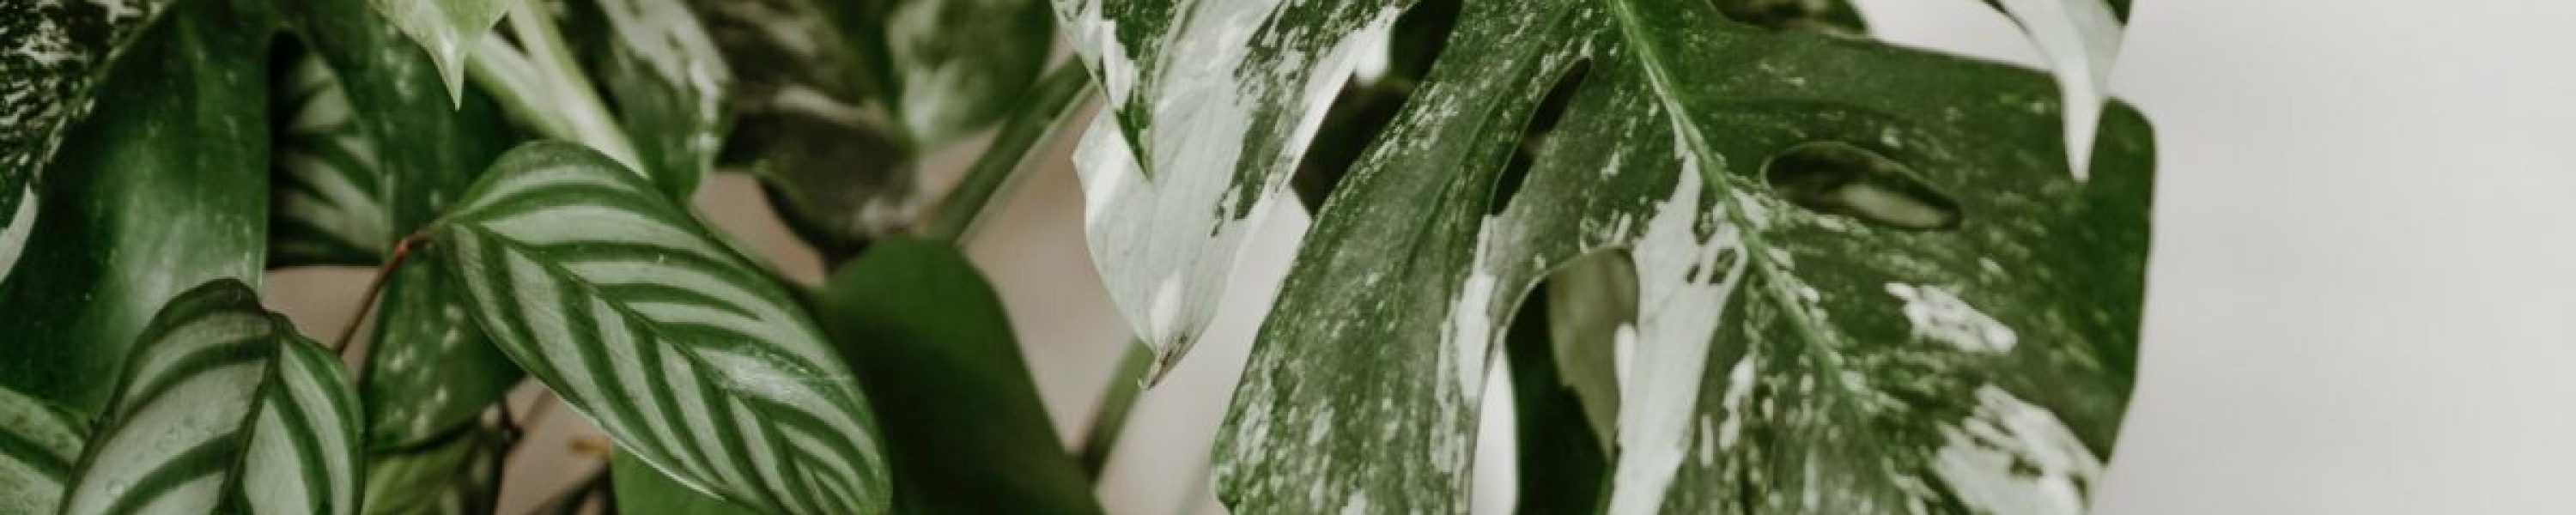 monstera variegata